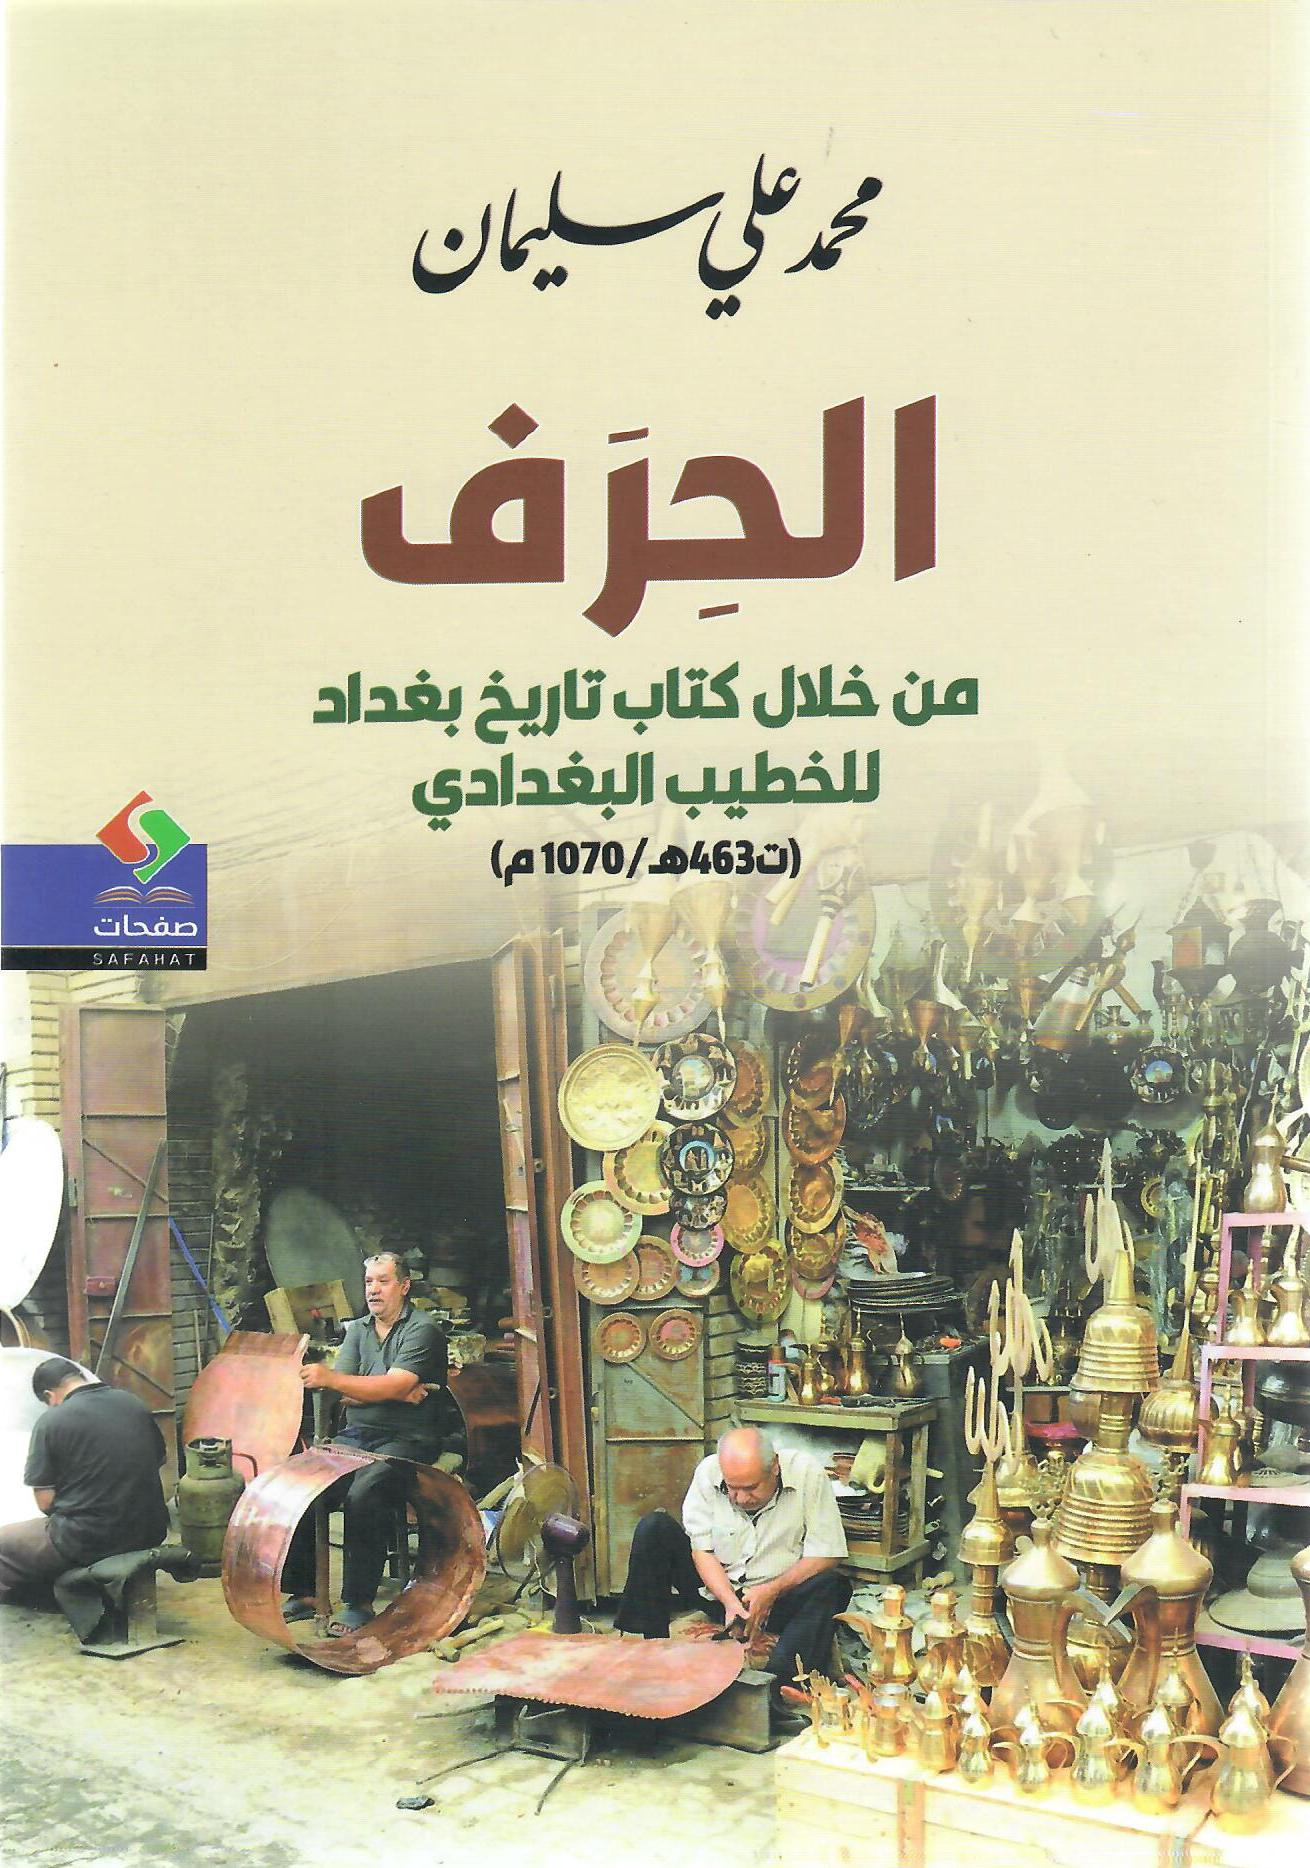 الحرف من خلال كتاب تاريخ بغداد للخطيب البغدادي